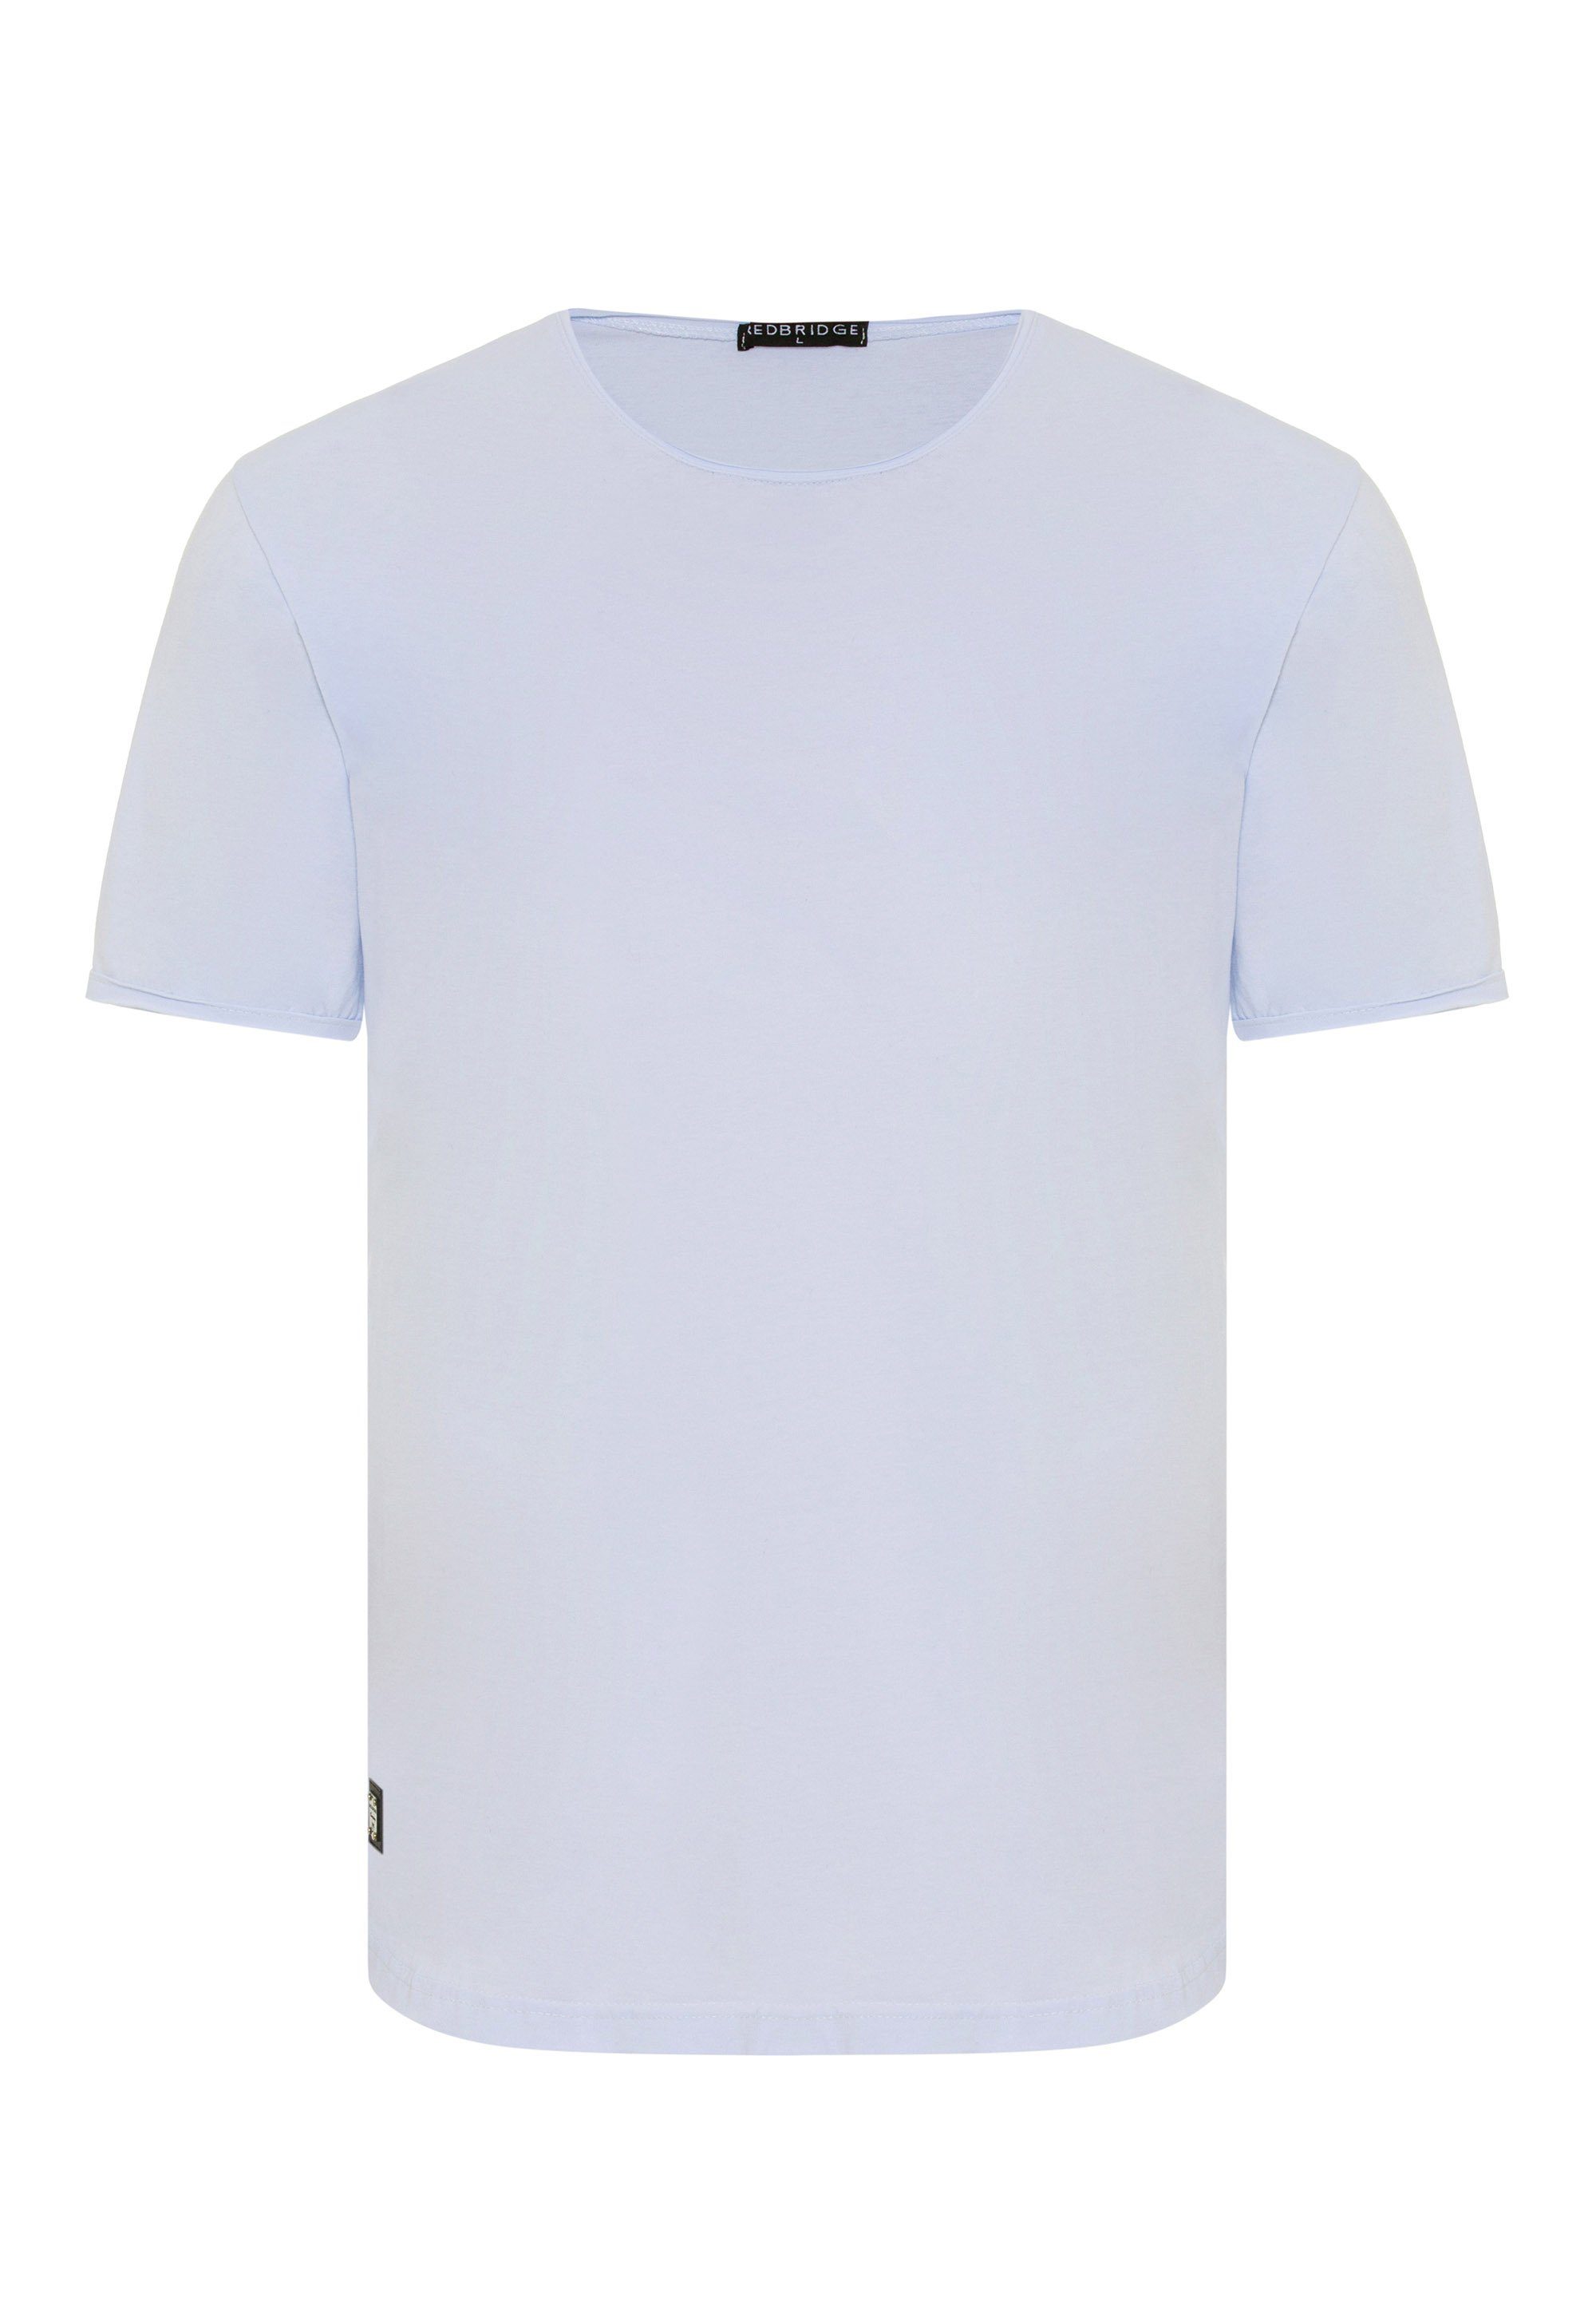 RedBridge T-Shirt Taunton mit Saum weiß abgerundeten